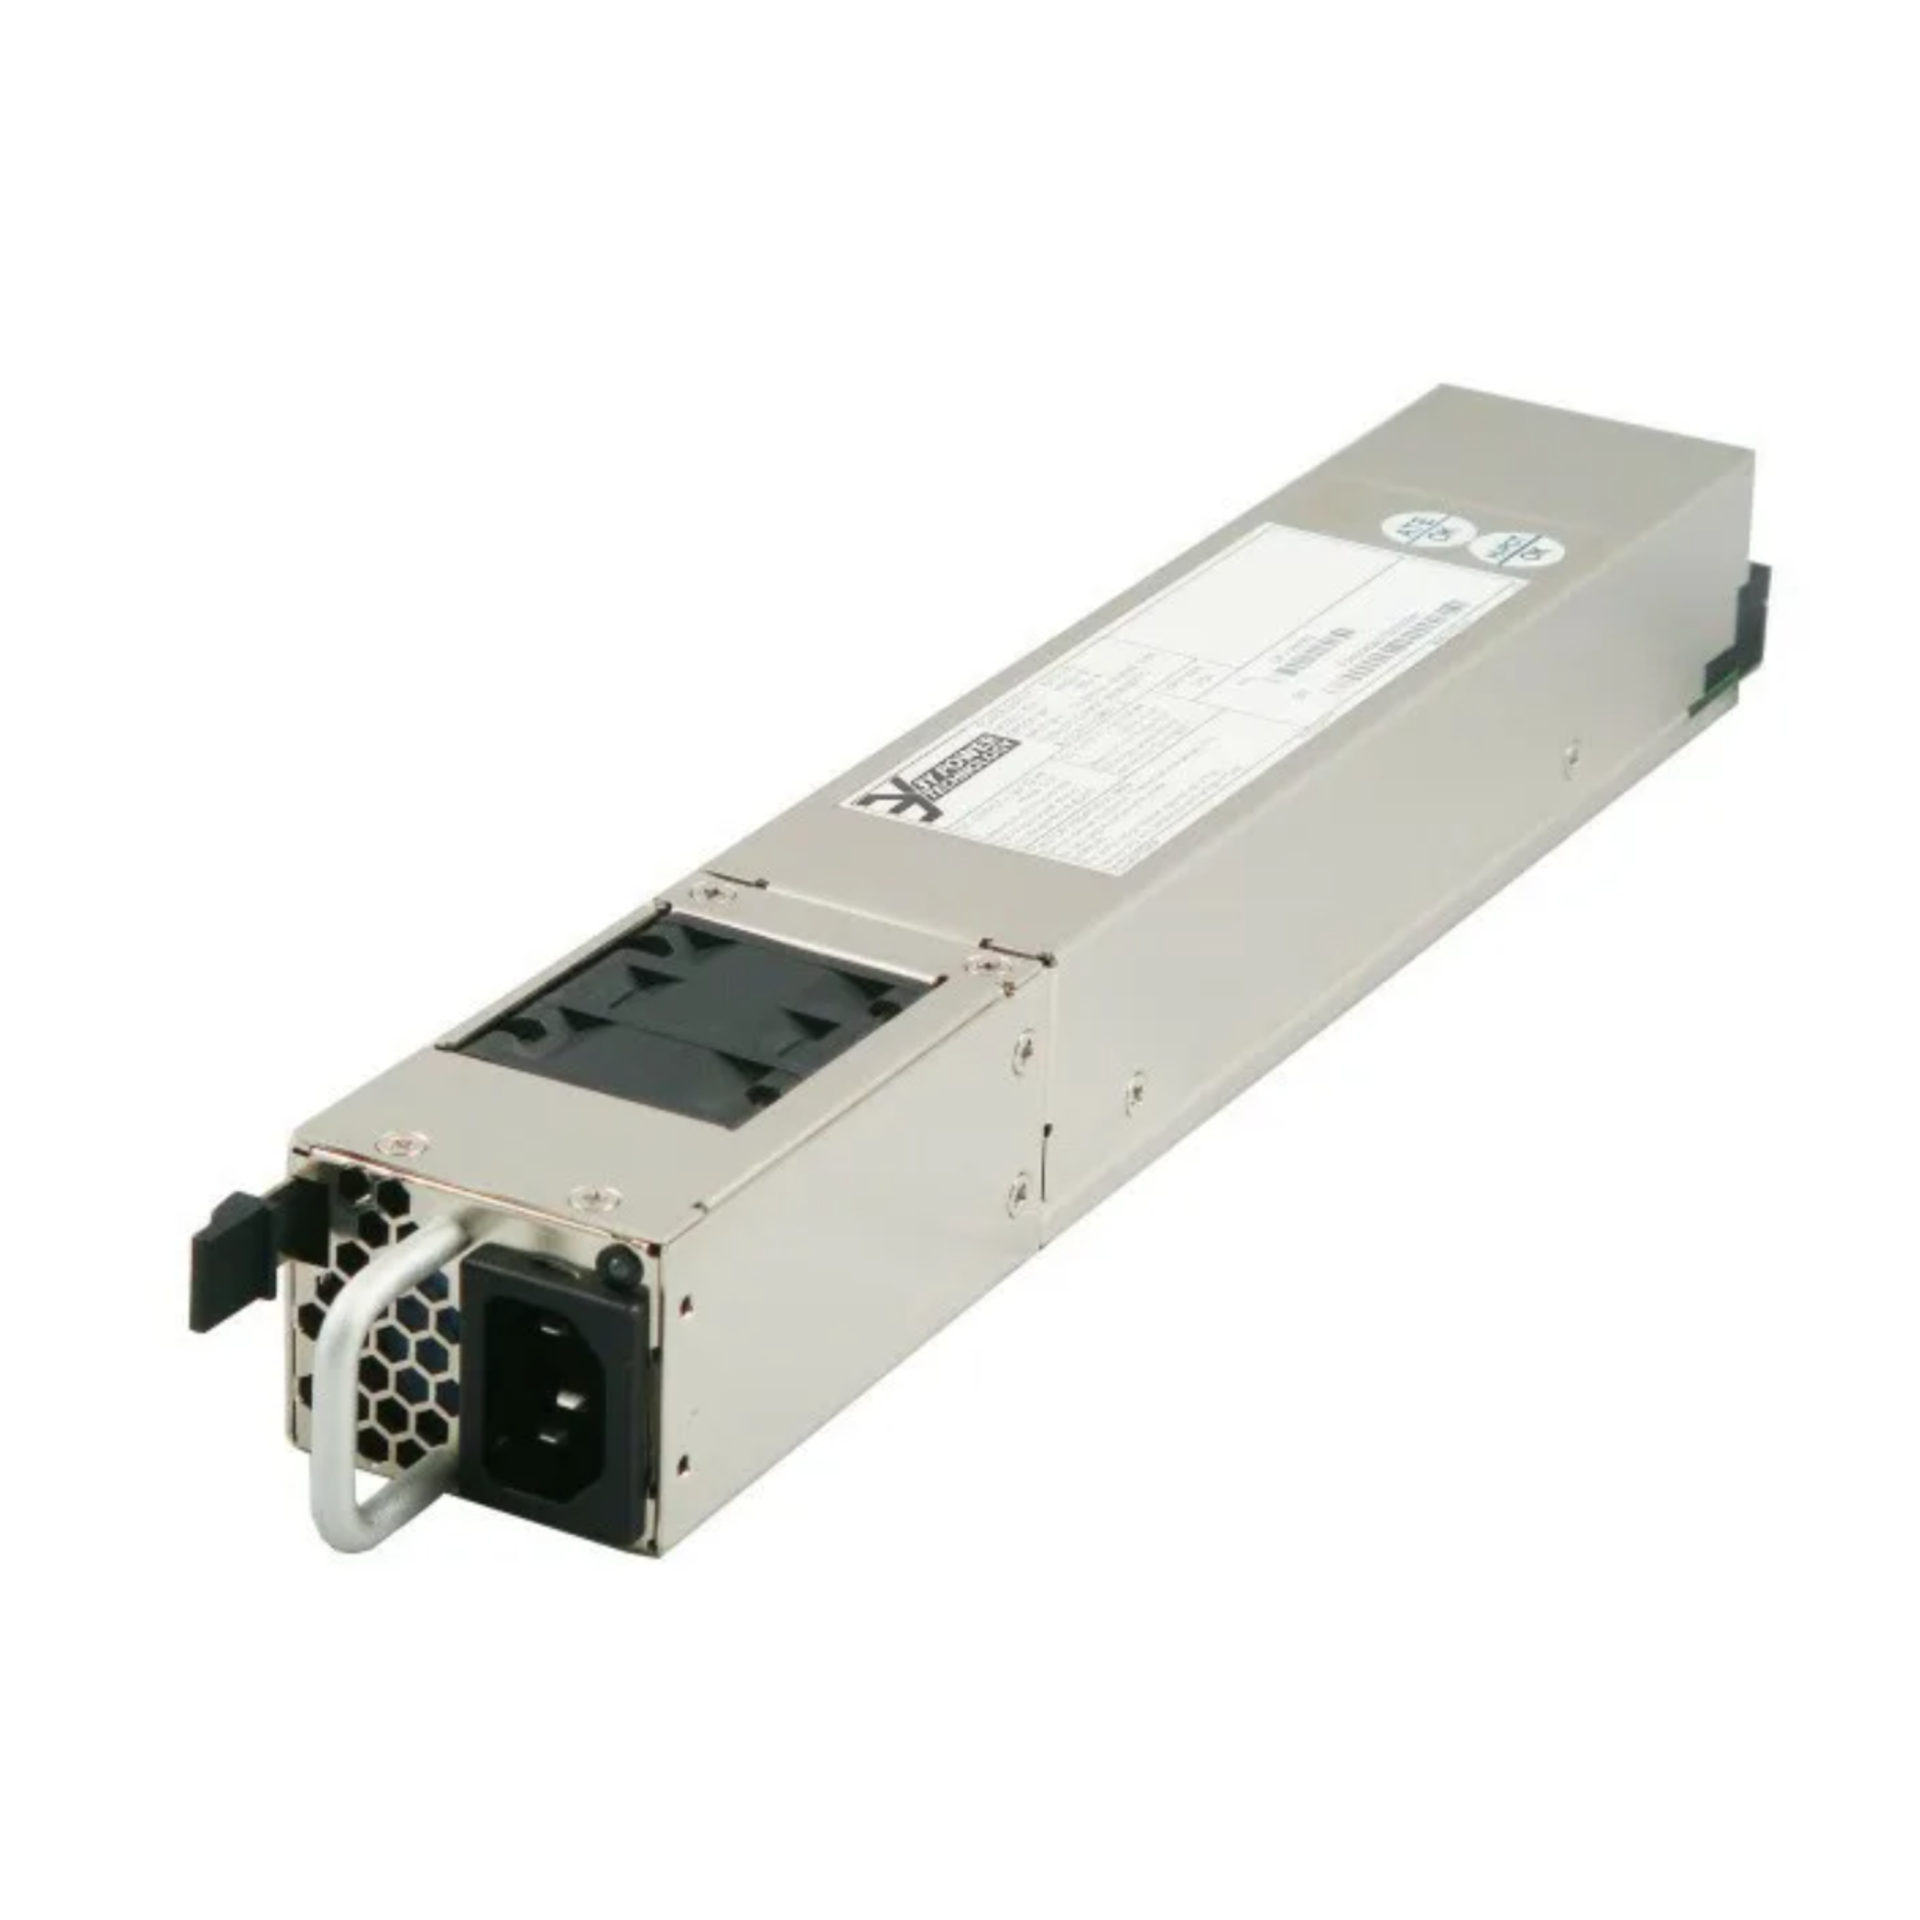 Блок питания для серверной платформы, SNR-SR360R-V3 PSU_FRU part в Максэлектро